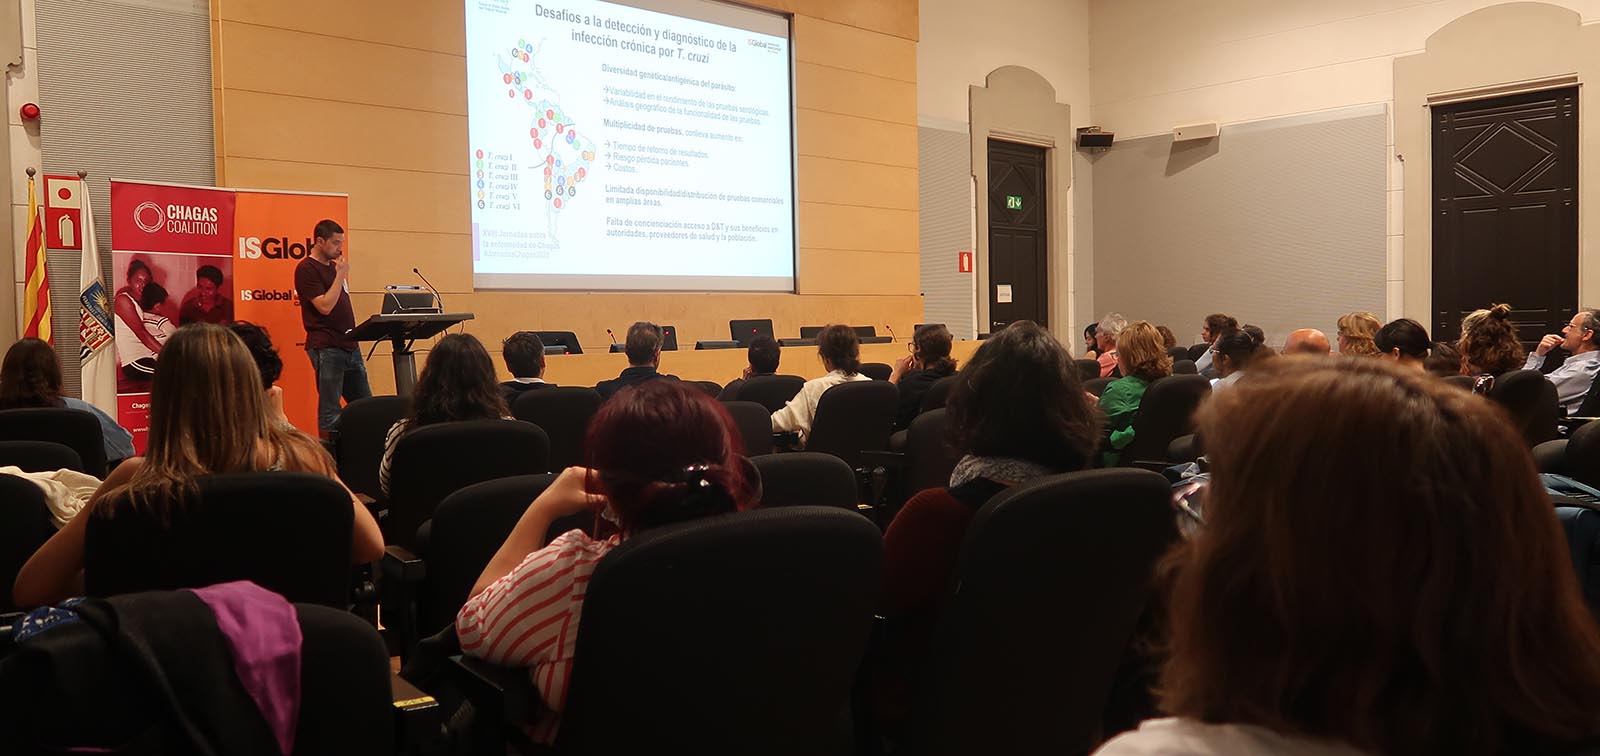 Julio Alonso Padilla a les XVIII Jornades sobre la malaltia de Chagas